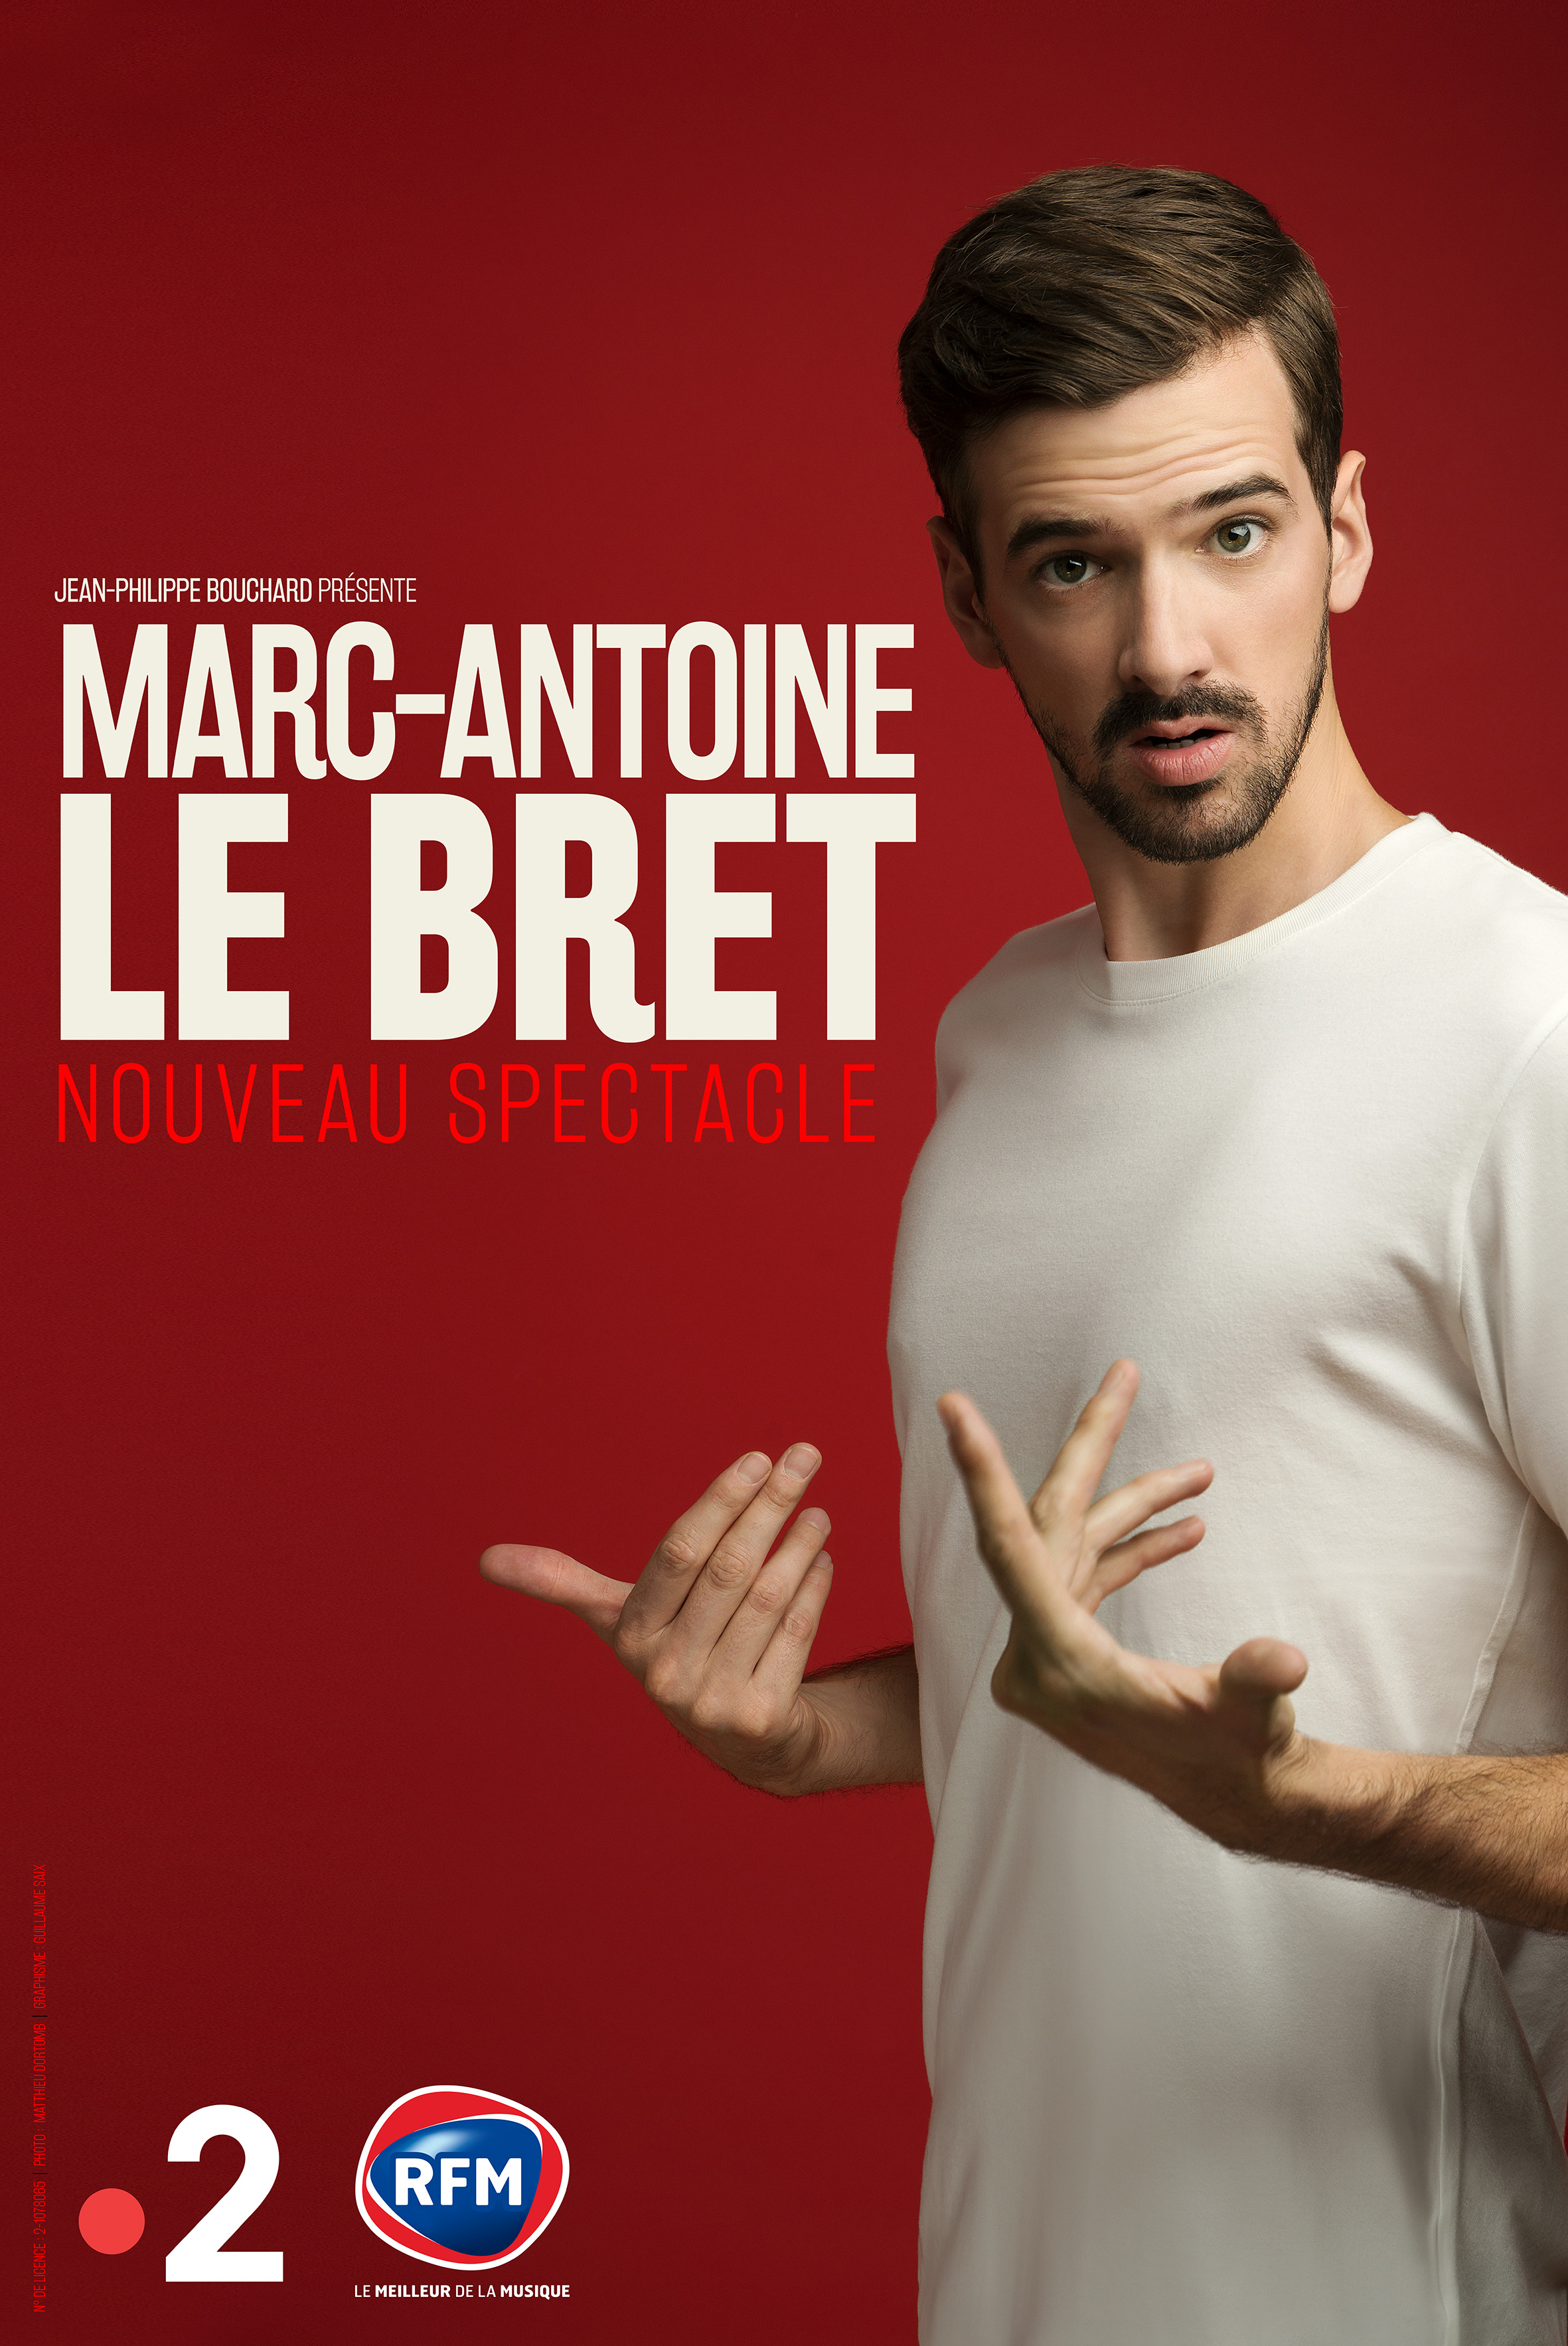 Marc-Antoine LE BRET